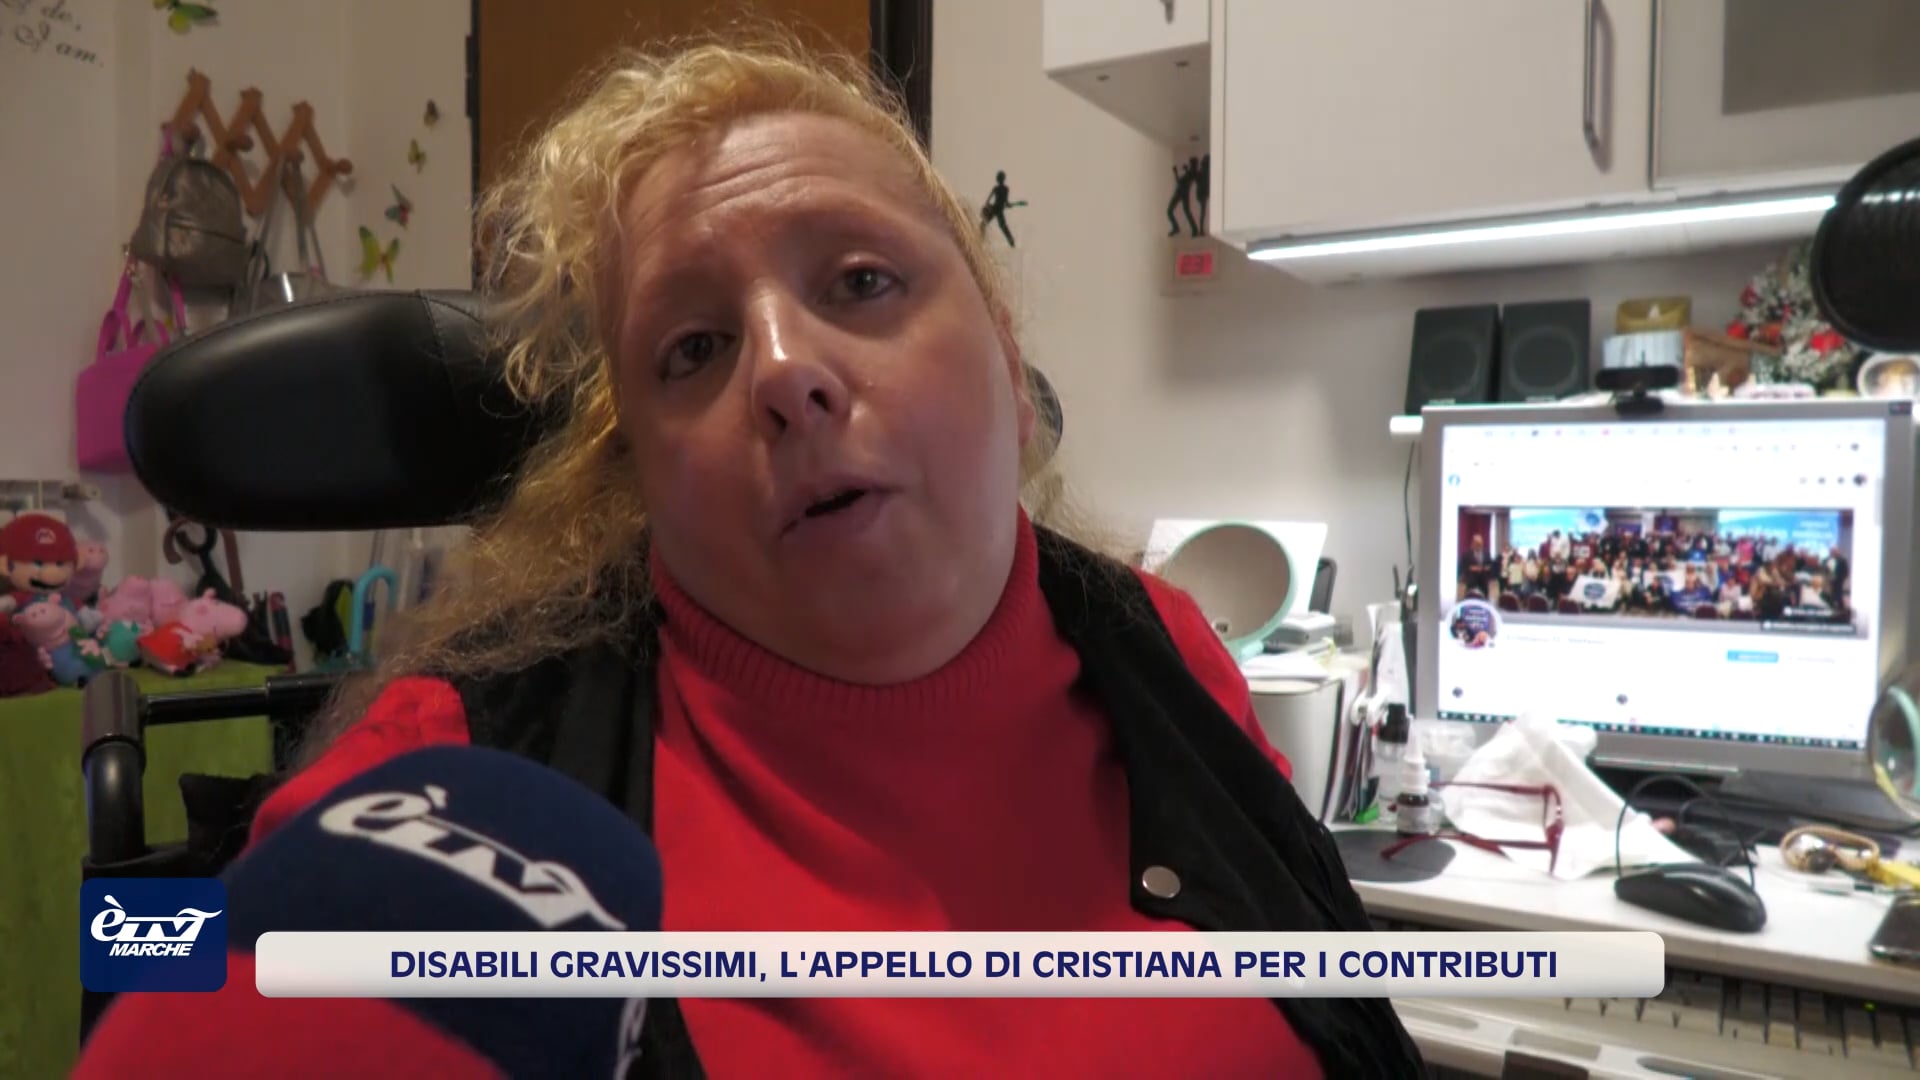 Disabili gravissimi, l'appello di Cristiana per i contributi - VIDEO